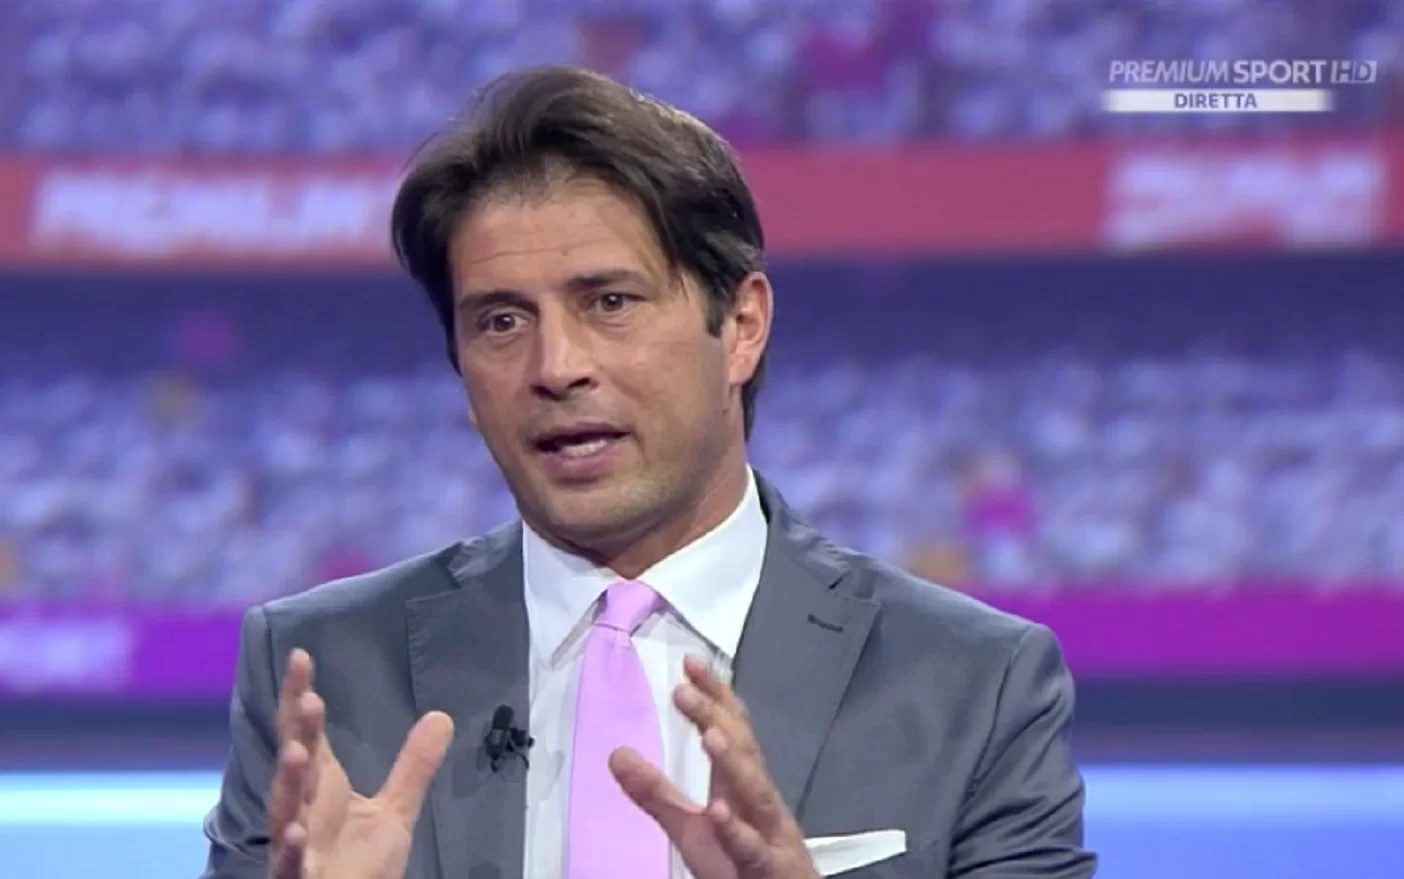 Tacchinardi avverte: “Il caso Ronaldo può fare bene alla Juventus”